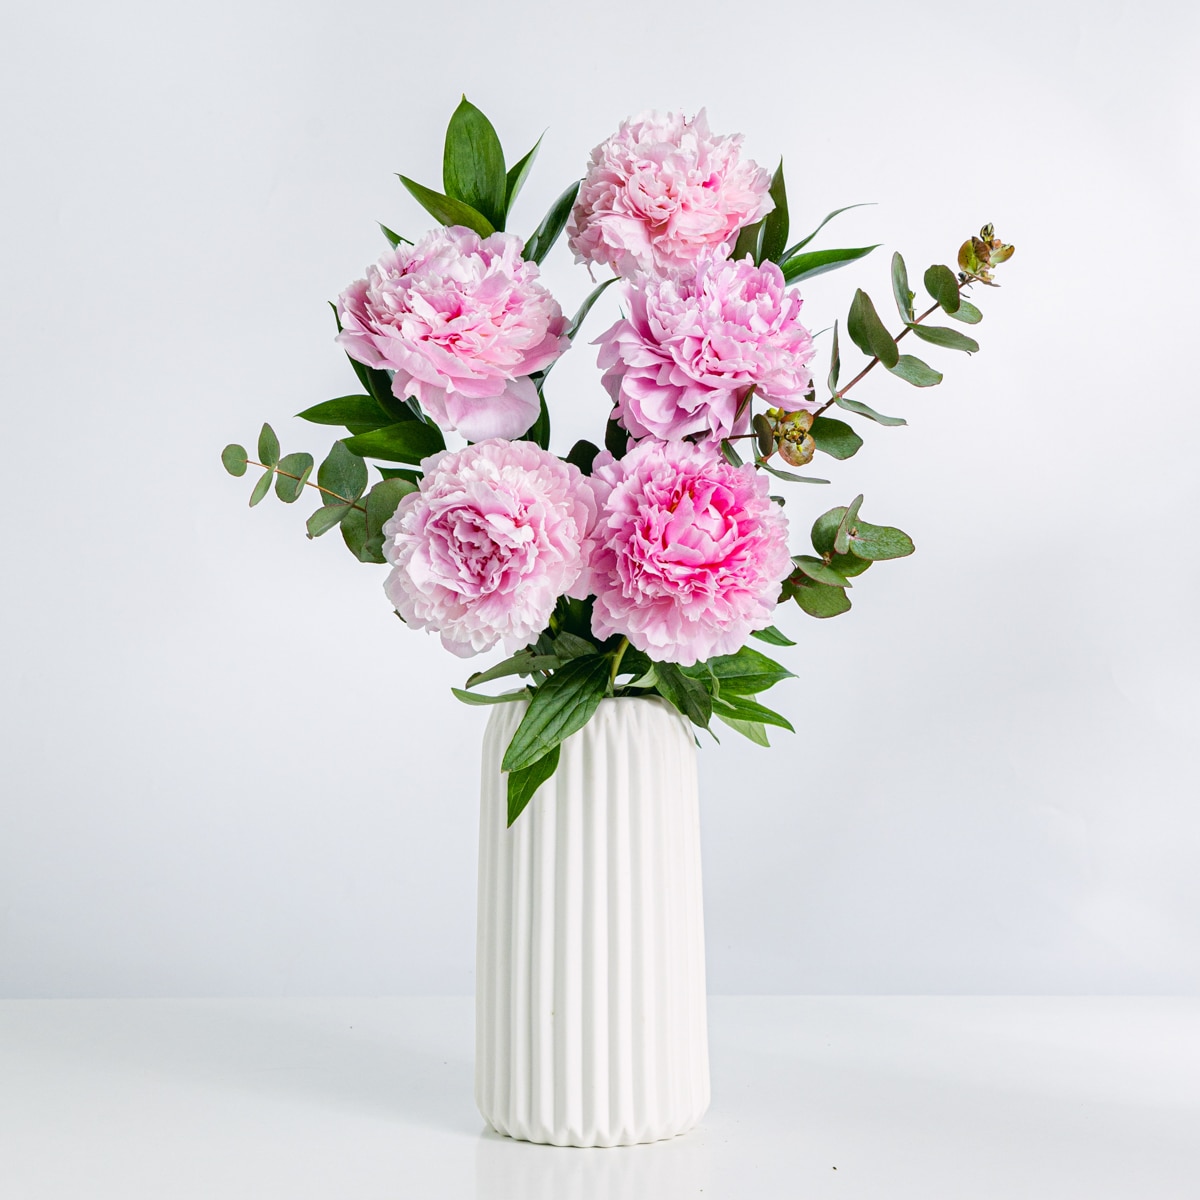 Blumenstrauß aus rosa Pfingstrosen in einer weißen Vase